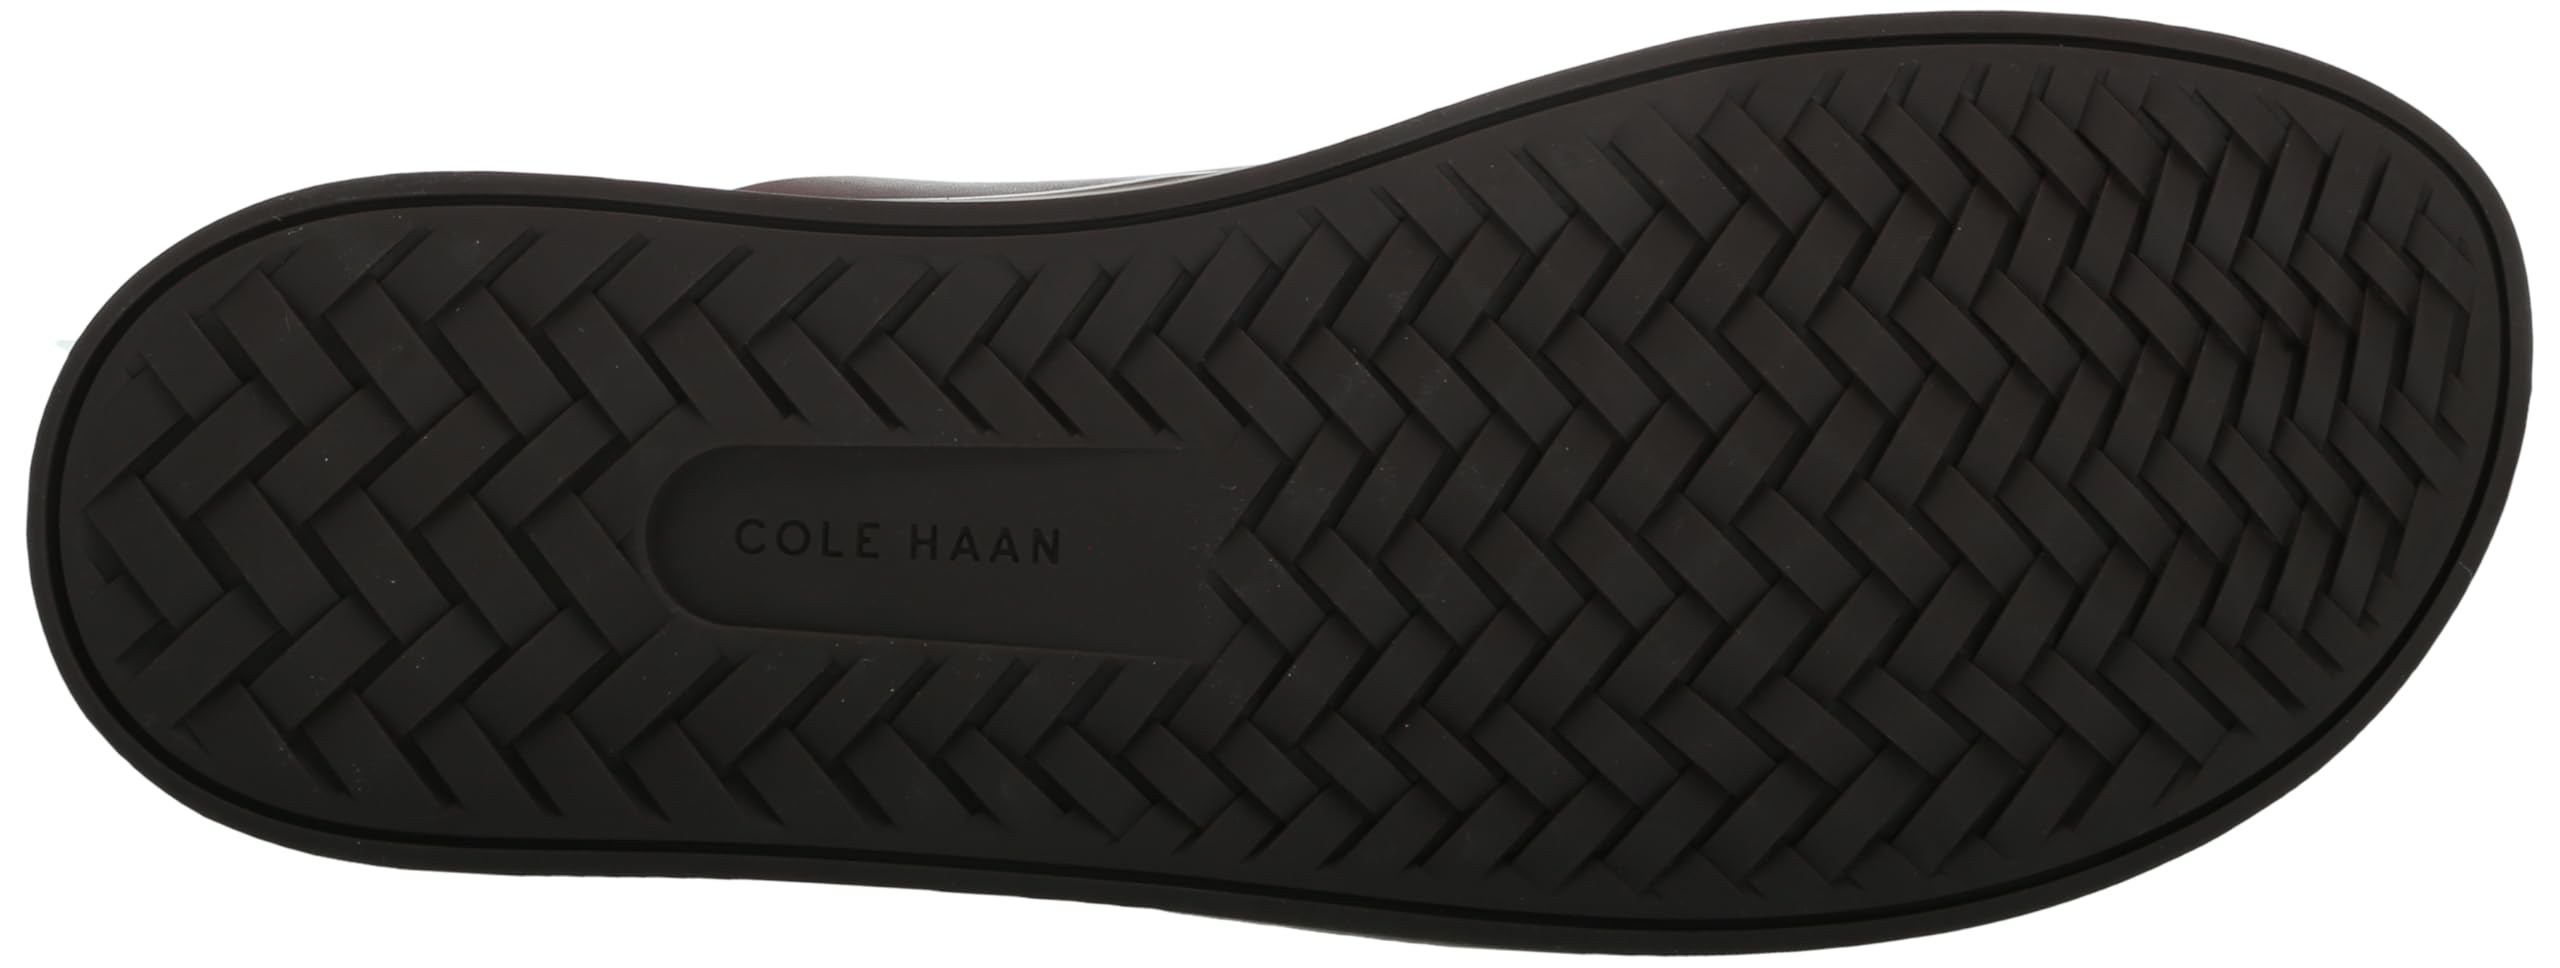 Cole Haan Men's Nantucket Cross Strap Sandal